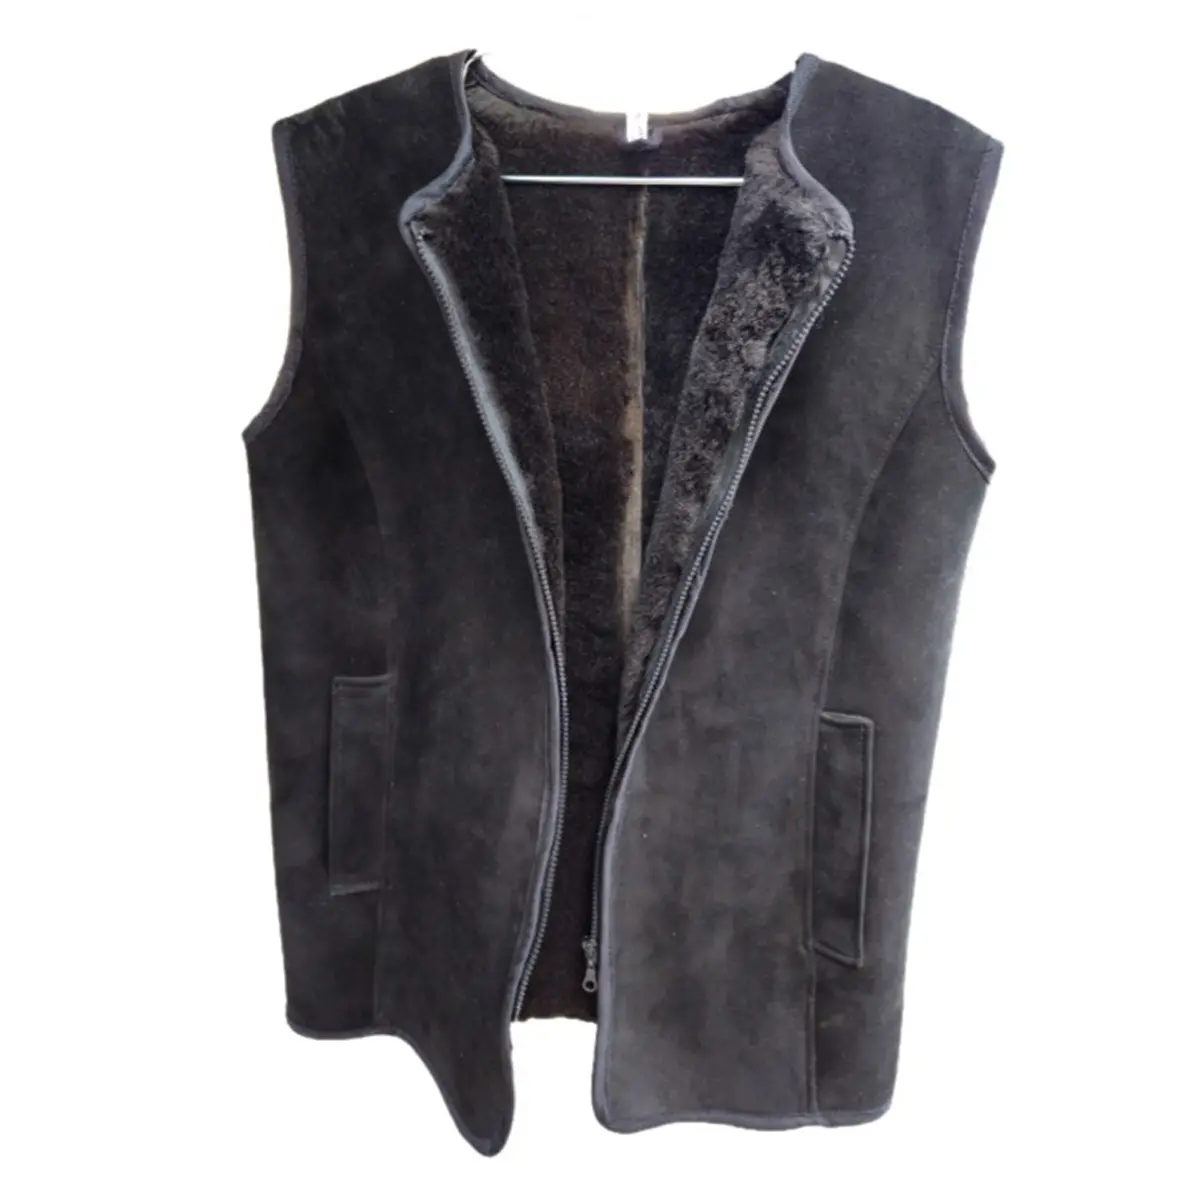 Sheepskin vest for cold season high quality vests for sale